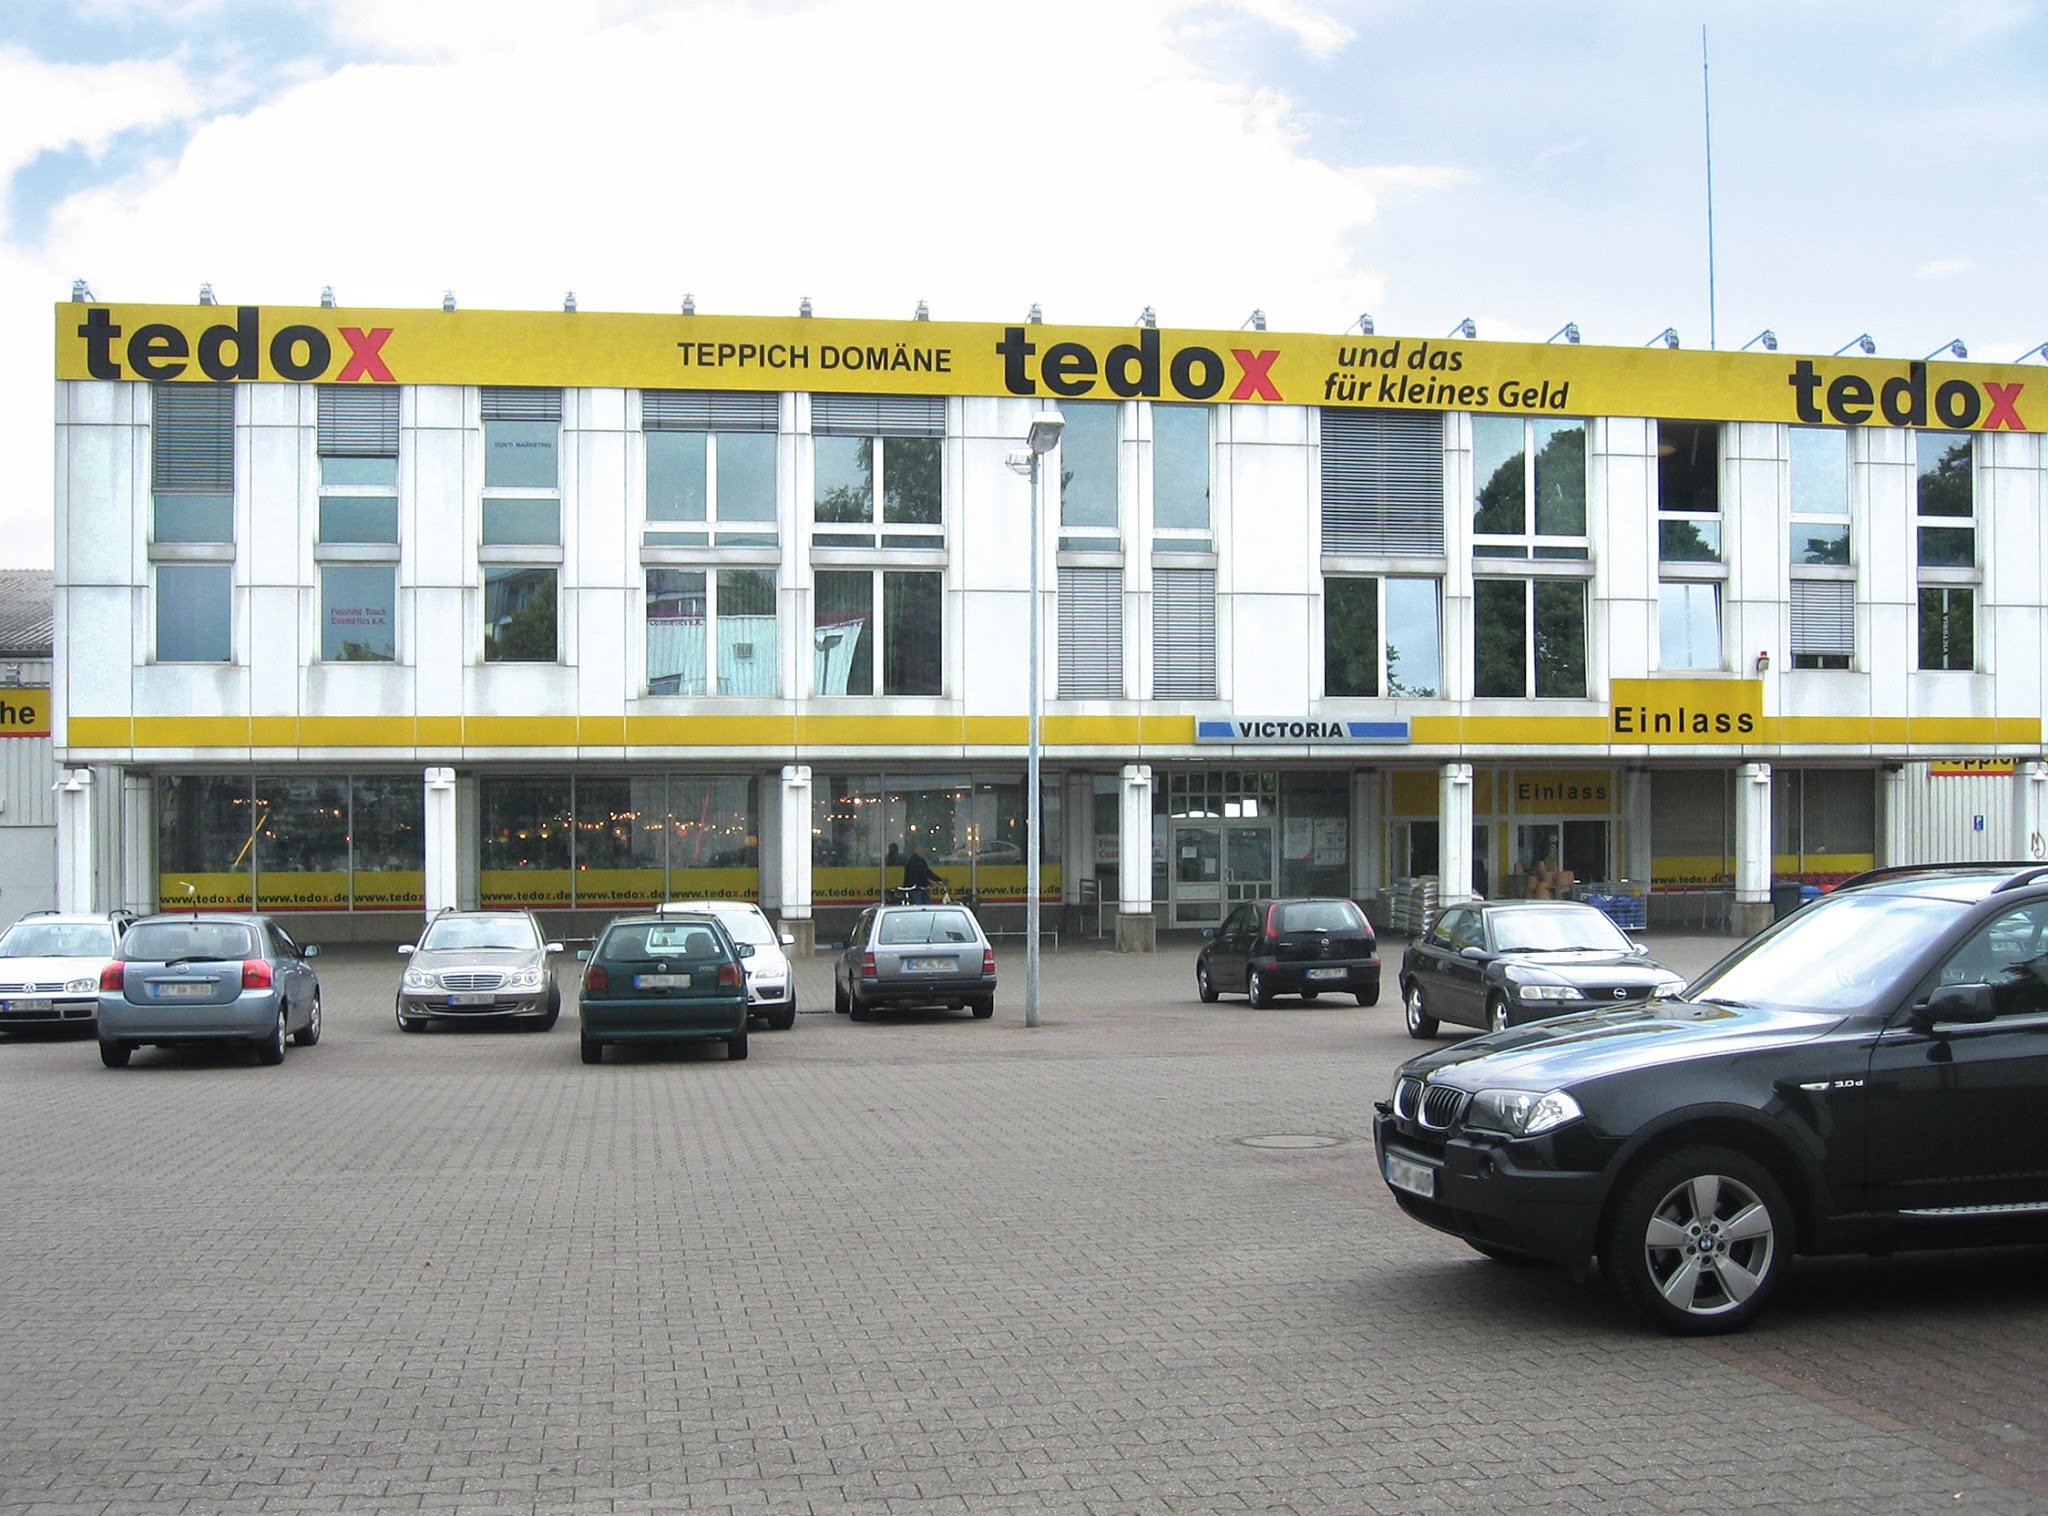 tedox KG, Feldstraße 130 in Mönchengladbach